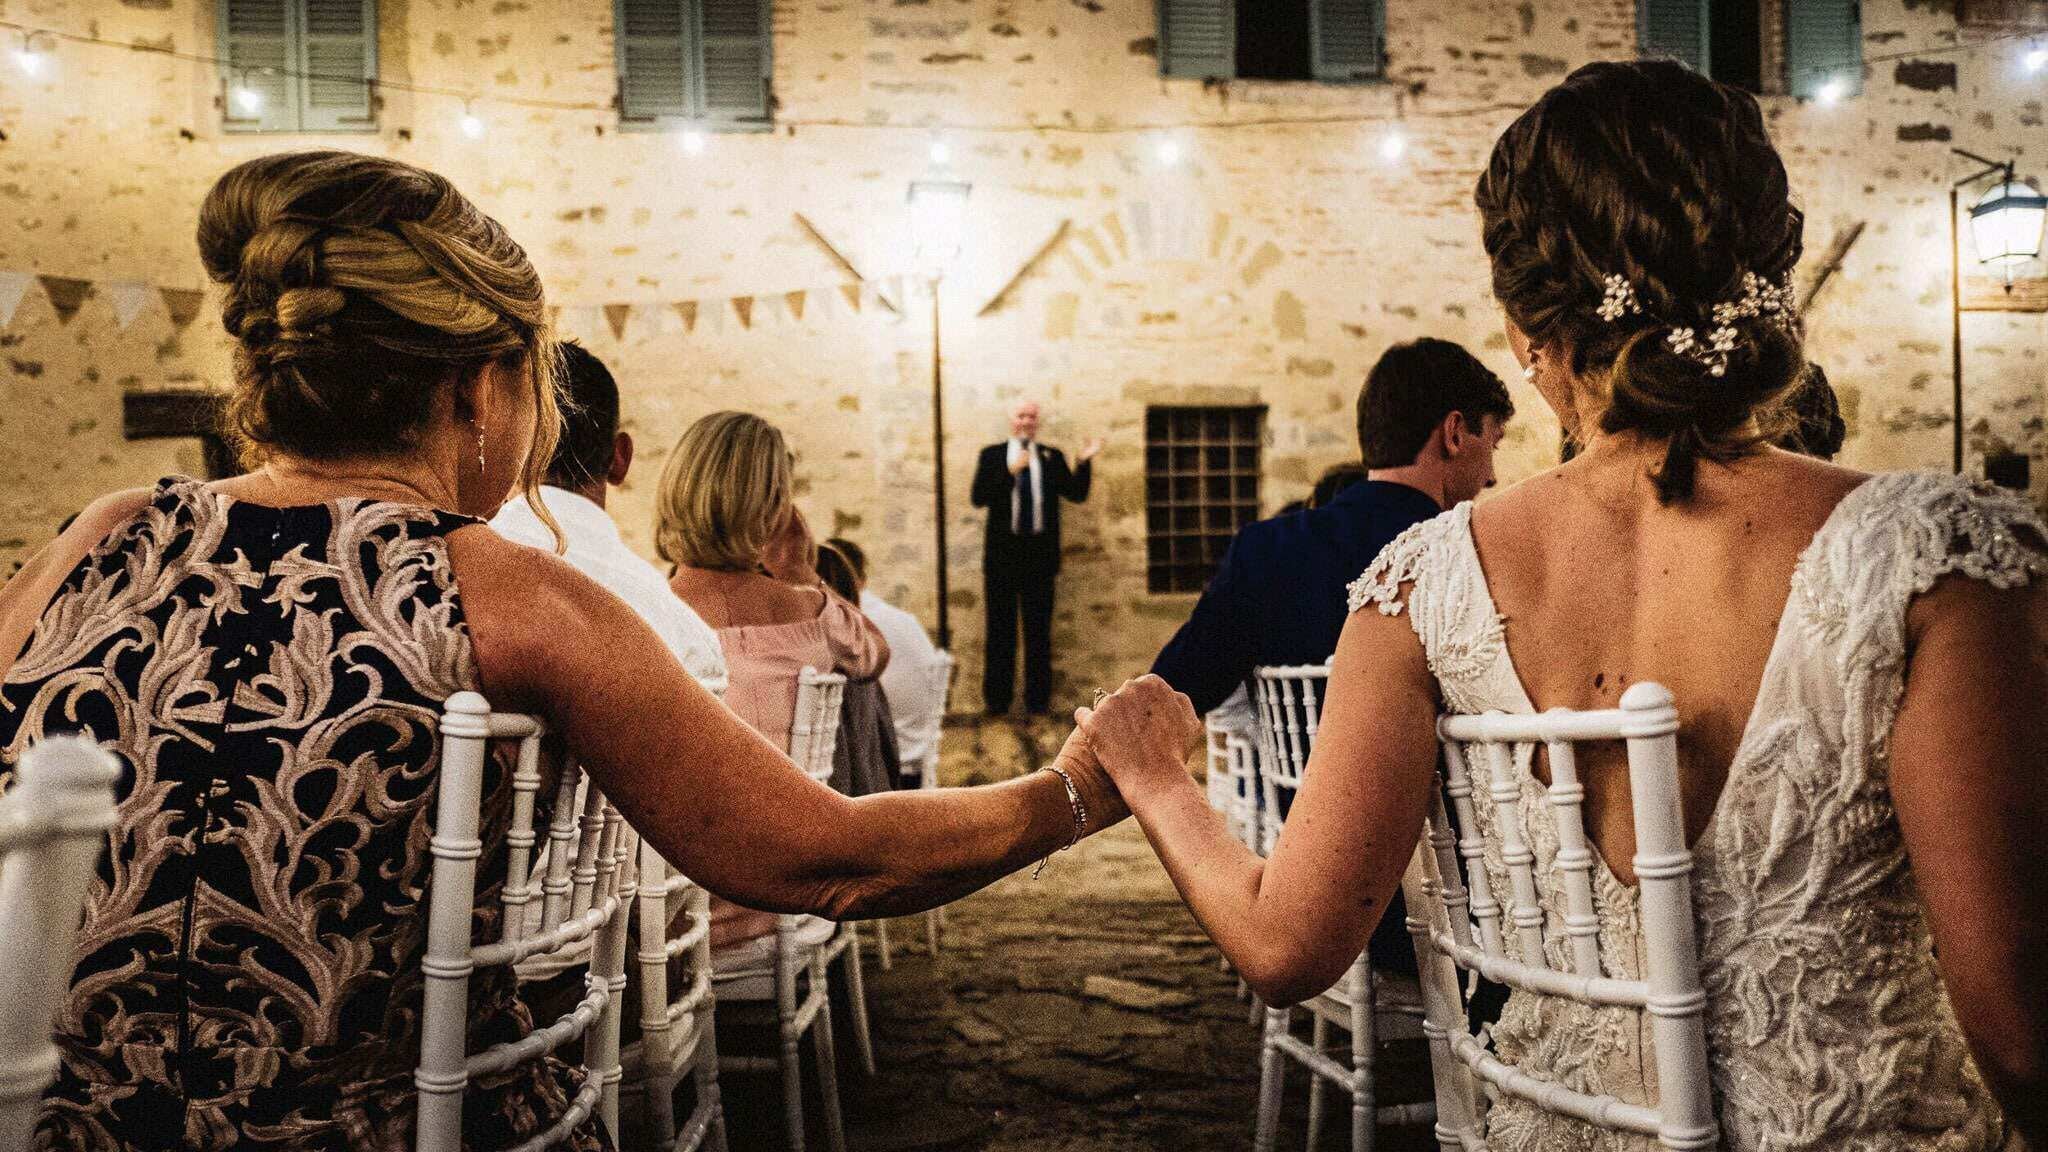 Borgo-Colognola-perugia-italy-wedding-photographer-manchester-091-min.jpg